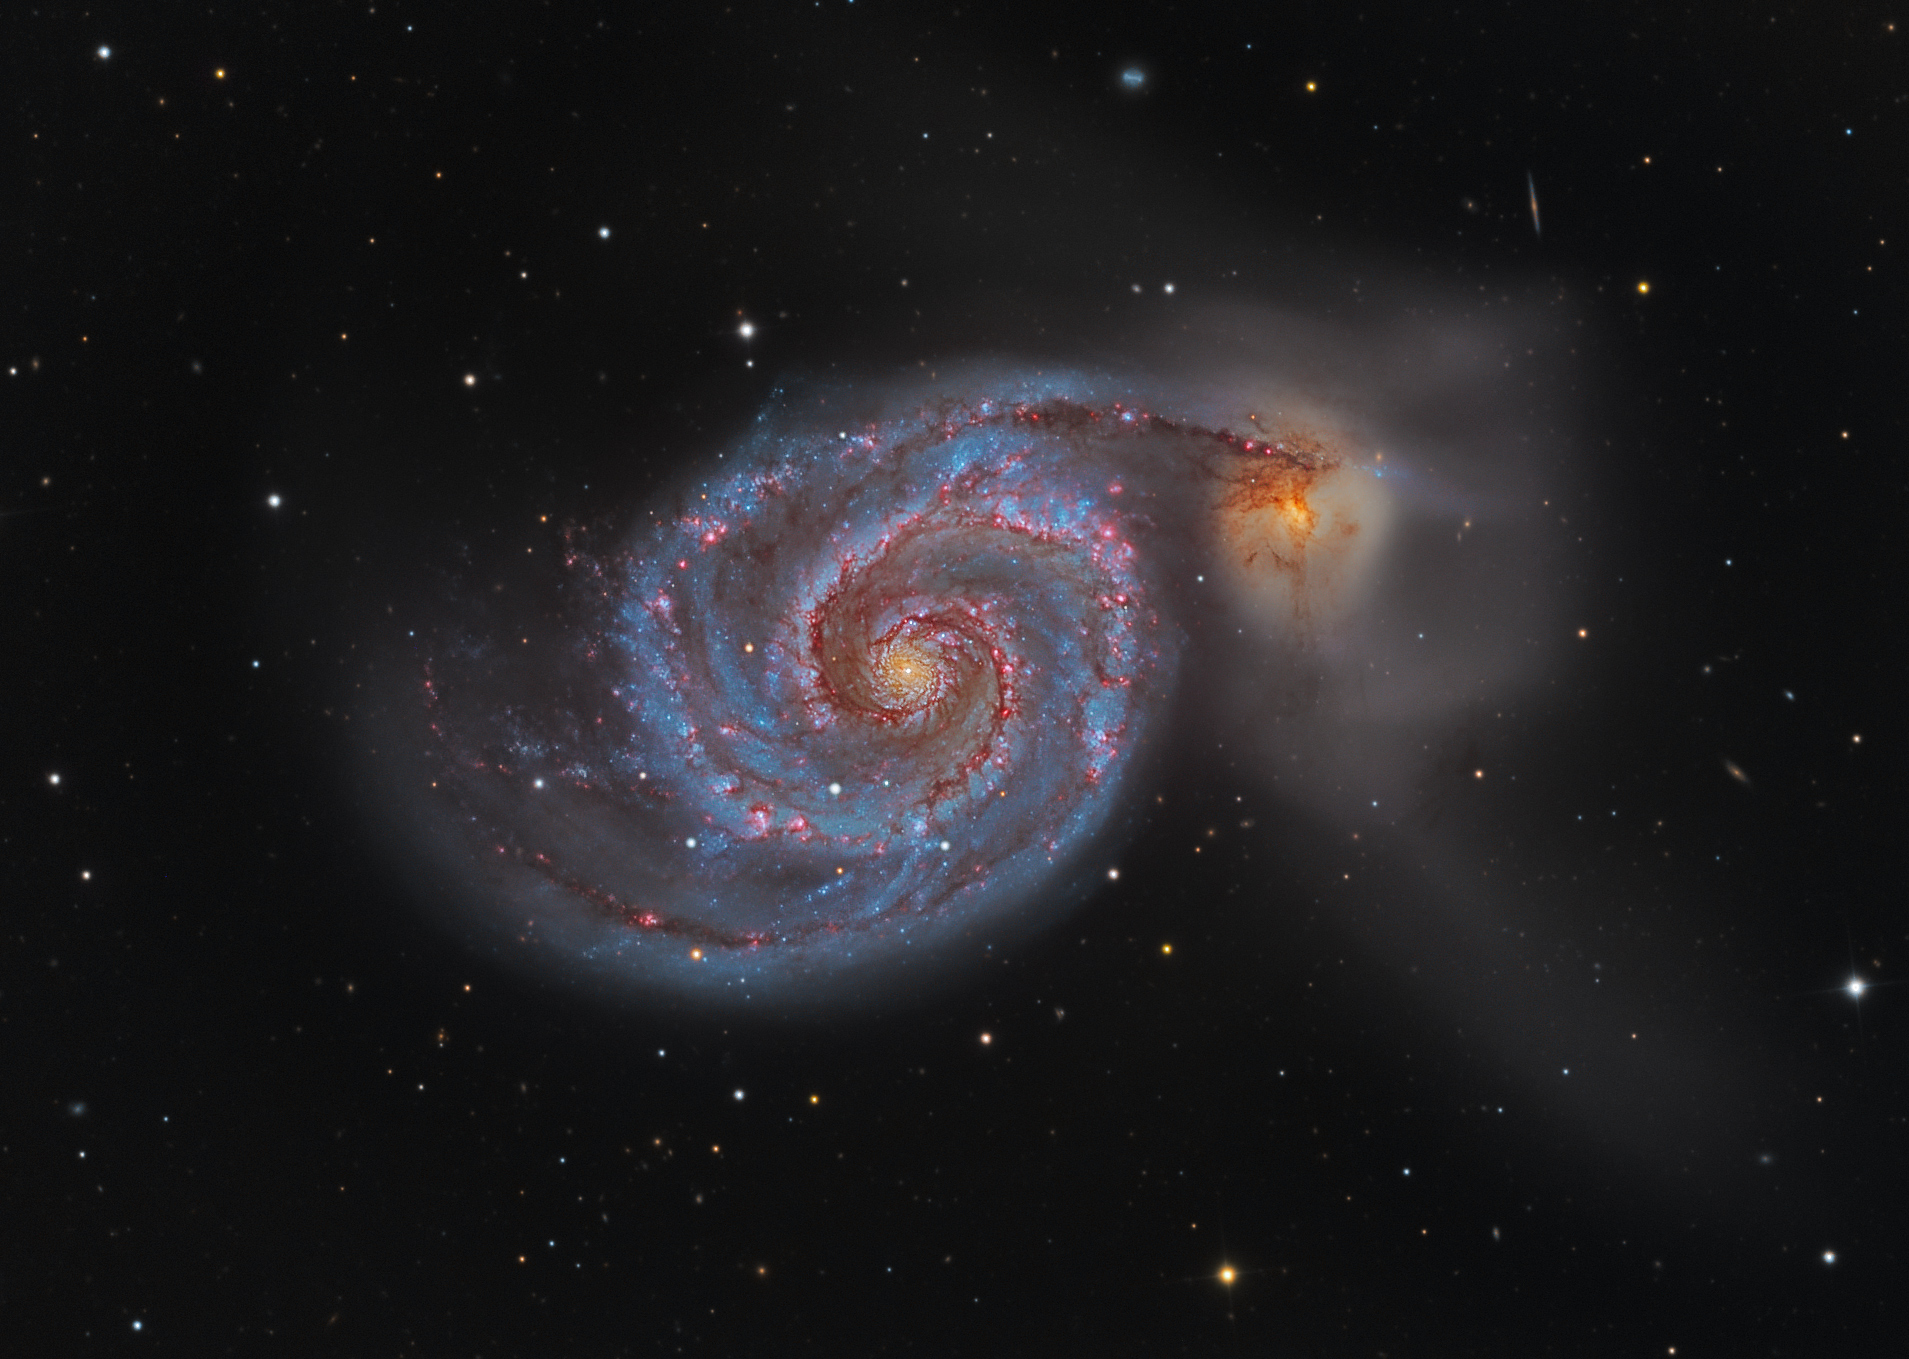 Галактика загородный. Галактика водоворот м51. М51 водоворот. Галактика водоворот в созвездии гончих псов. Галактика водоворот m51 и NGC 5195.